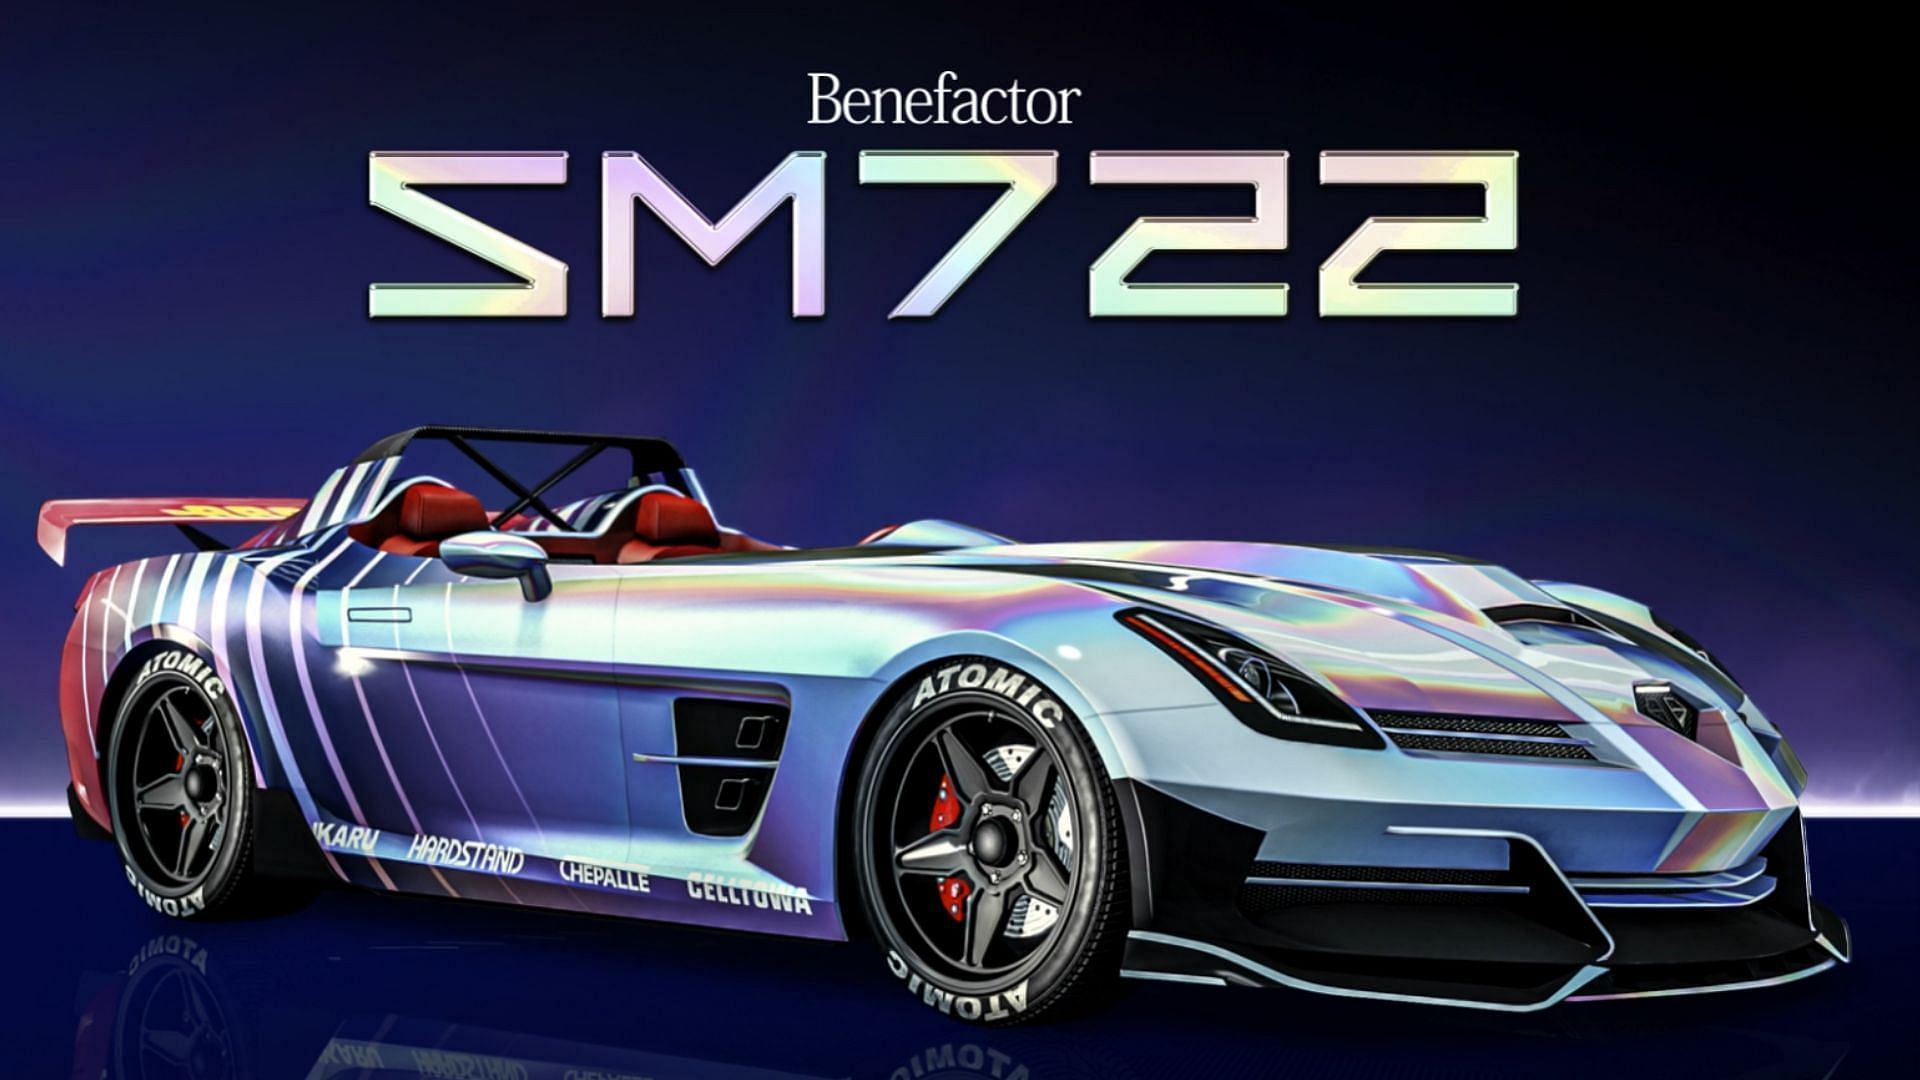 The SM722 (Image via Rockstar Games)